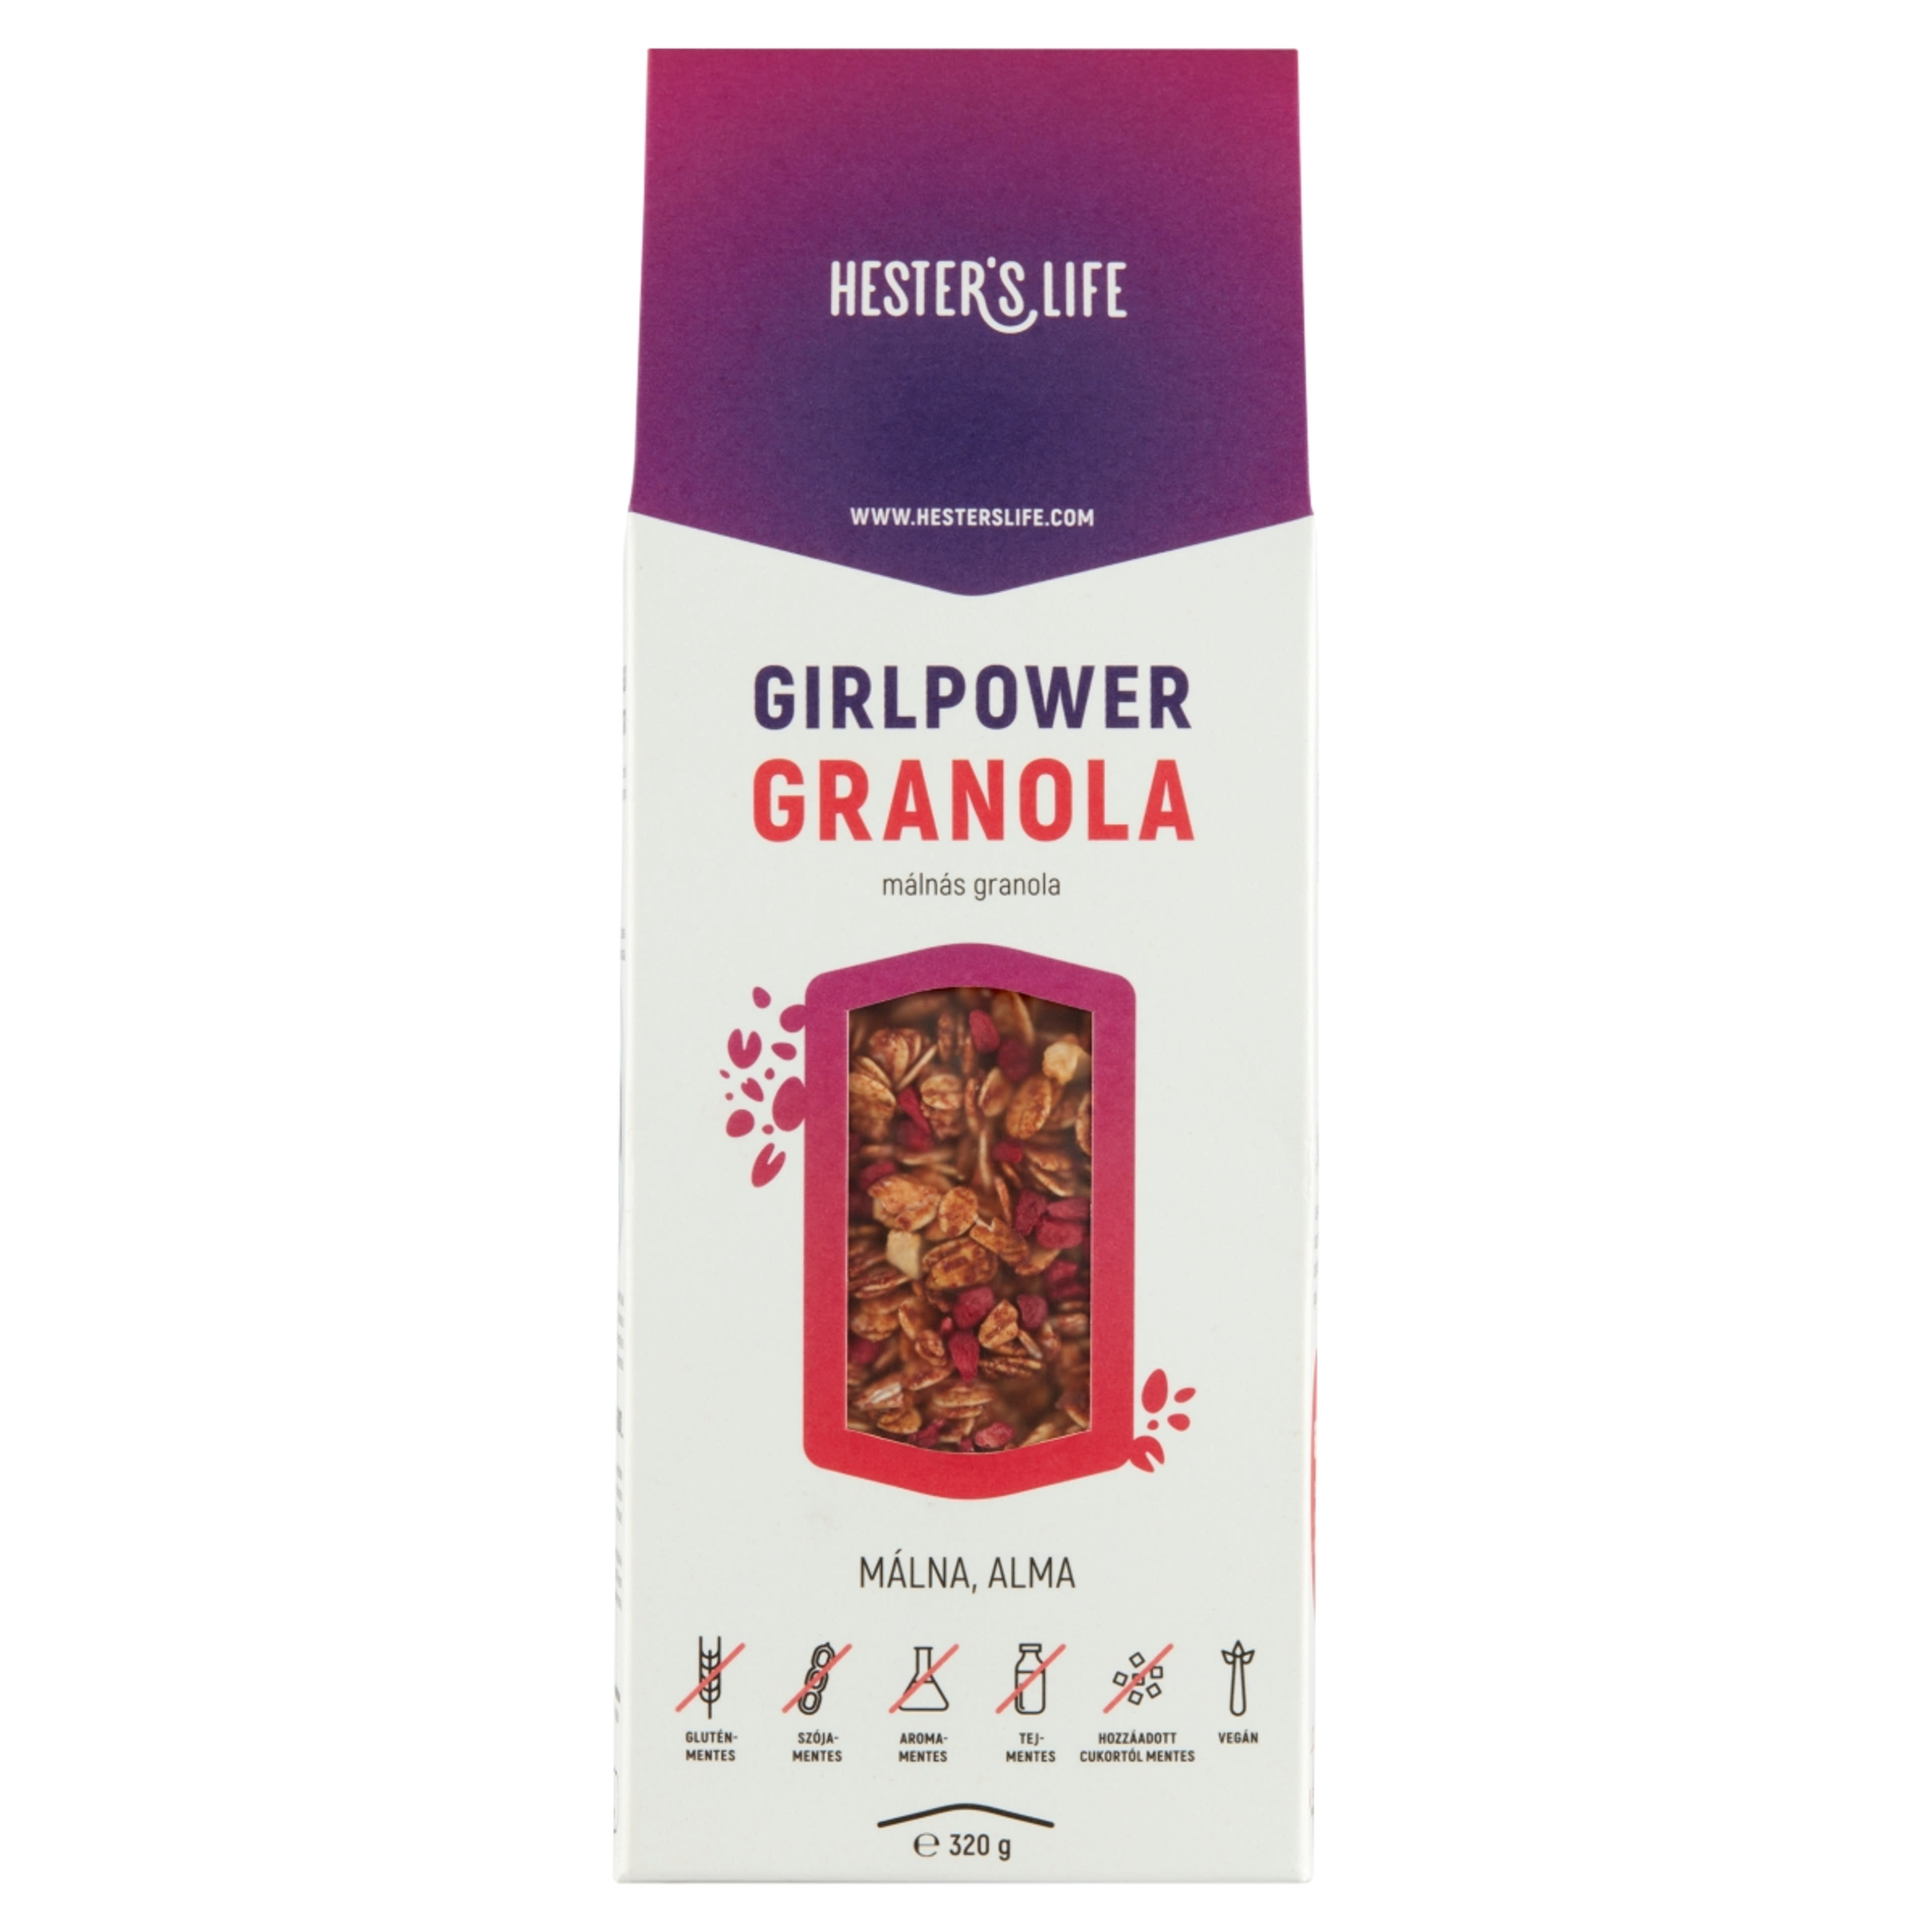 Hester's life girlpower granola - 320 g-1